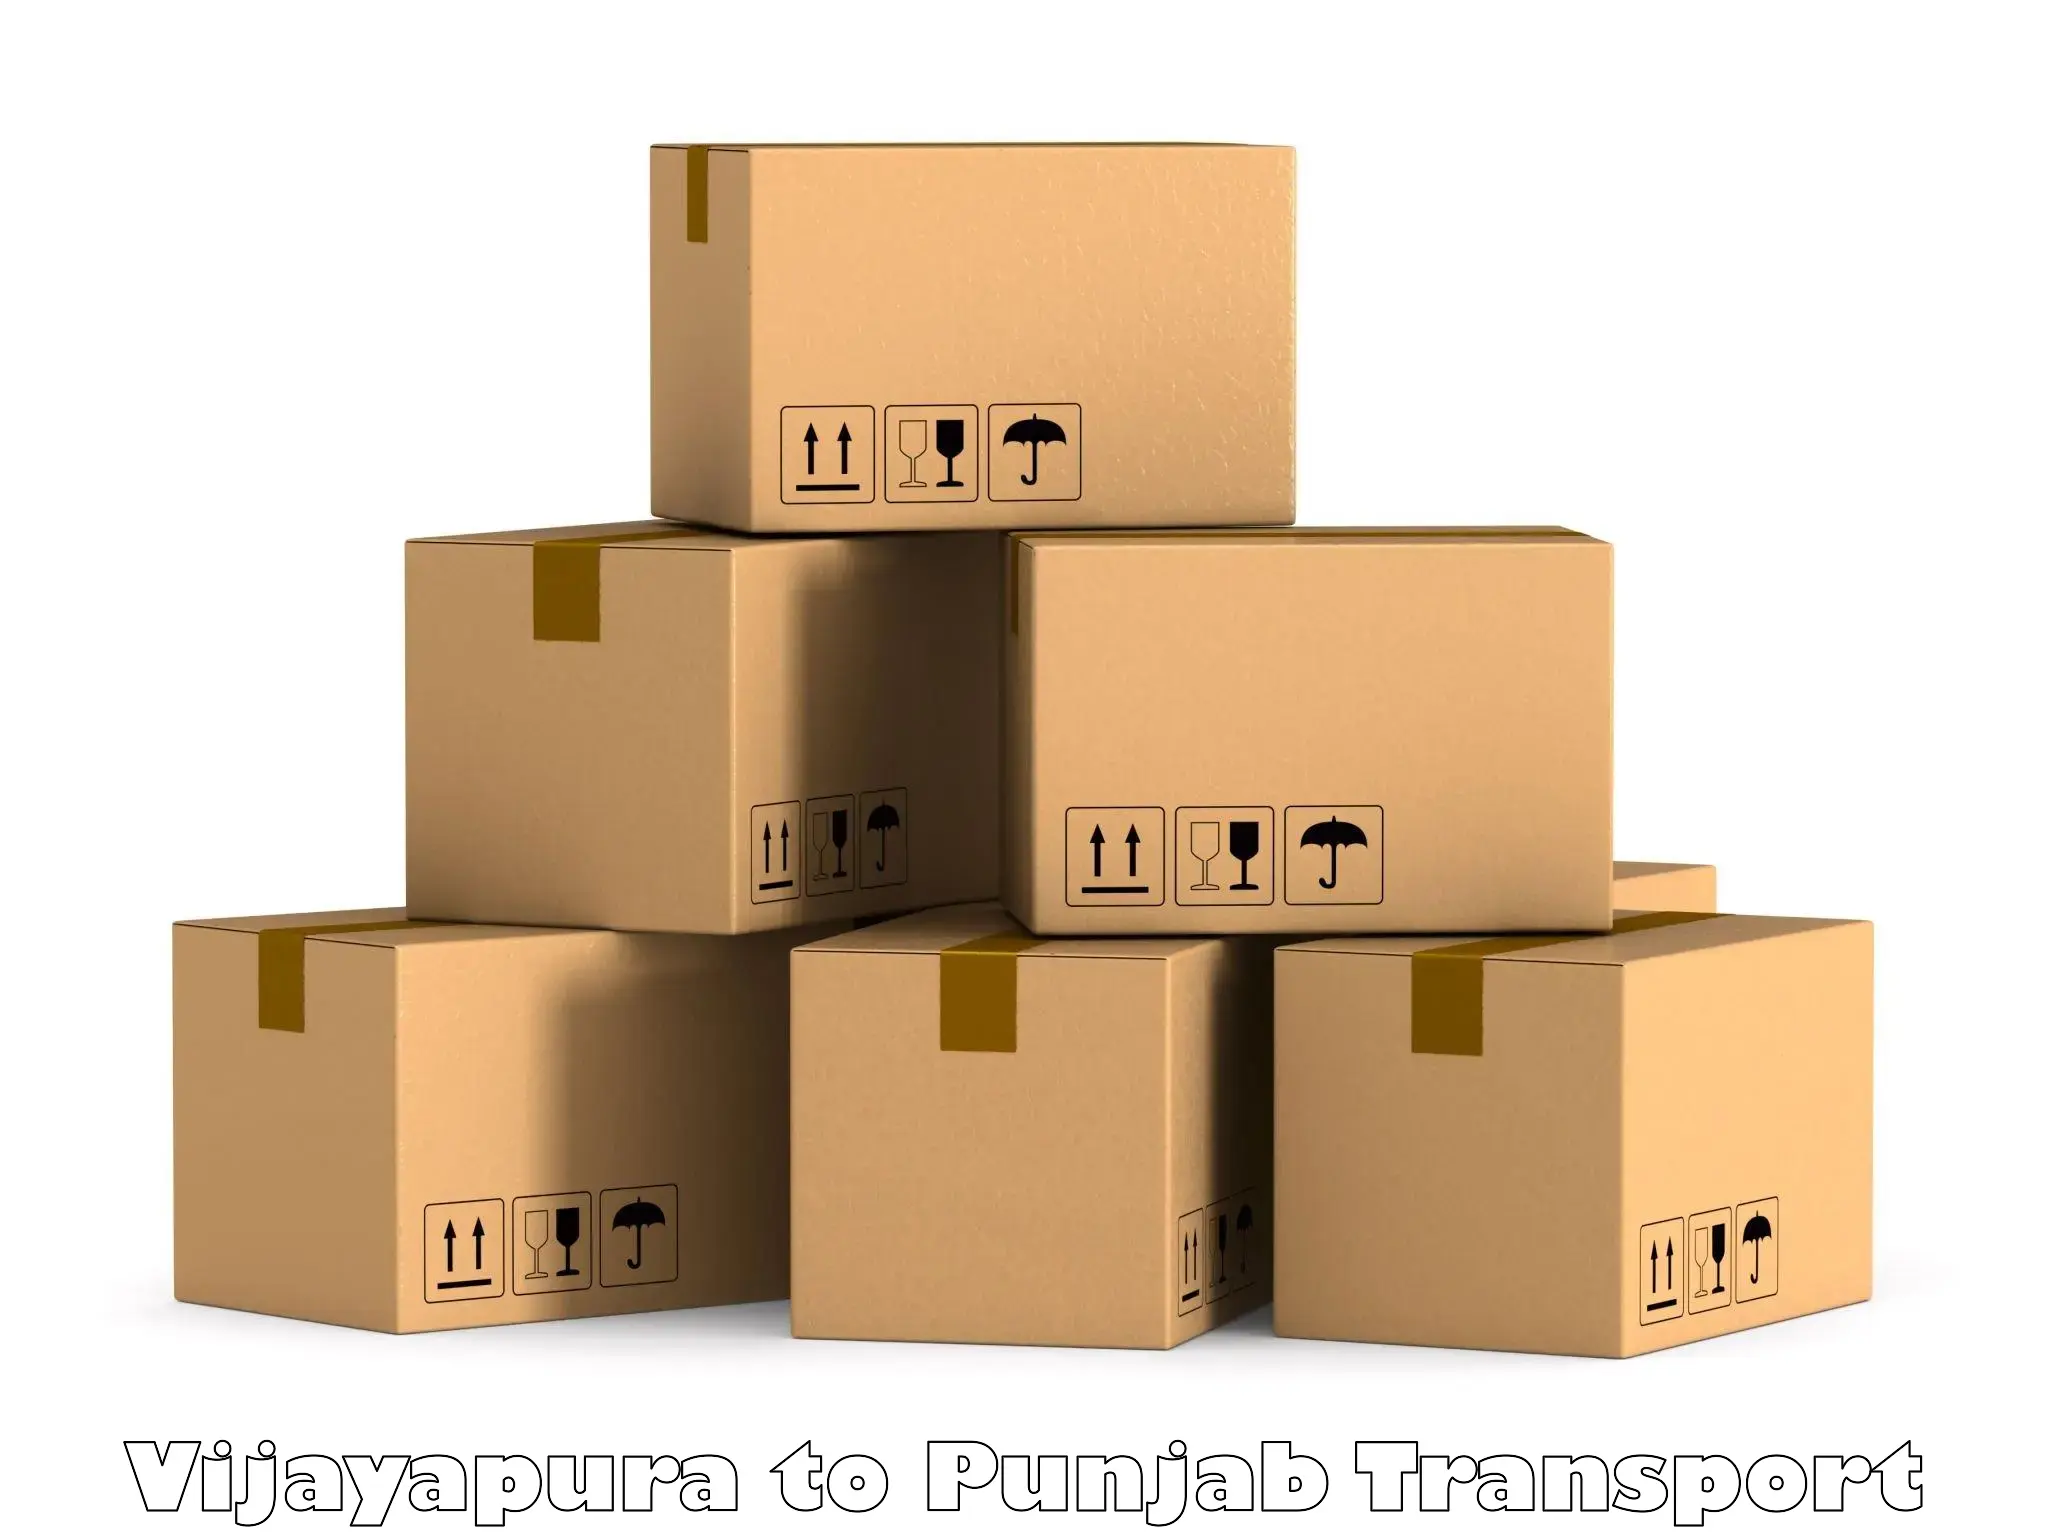 Furniture transport service Vijayapura to Punjab